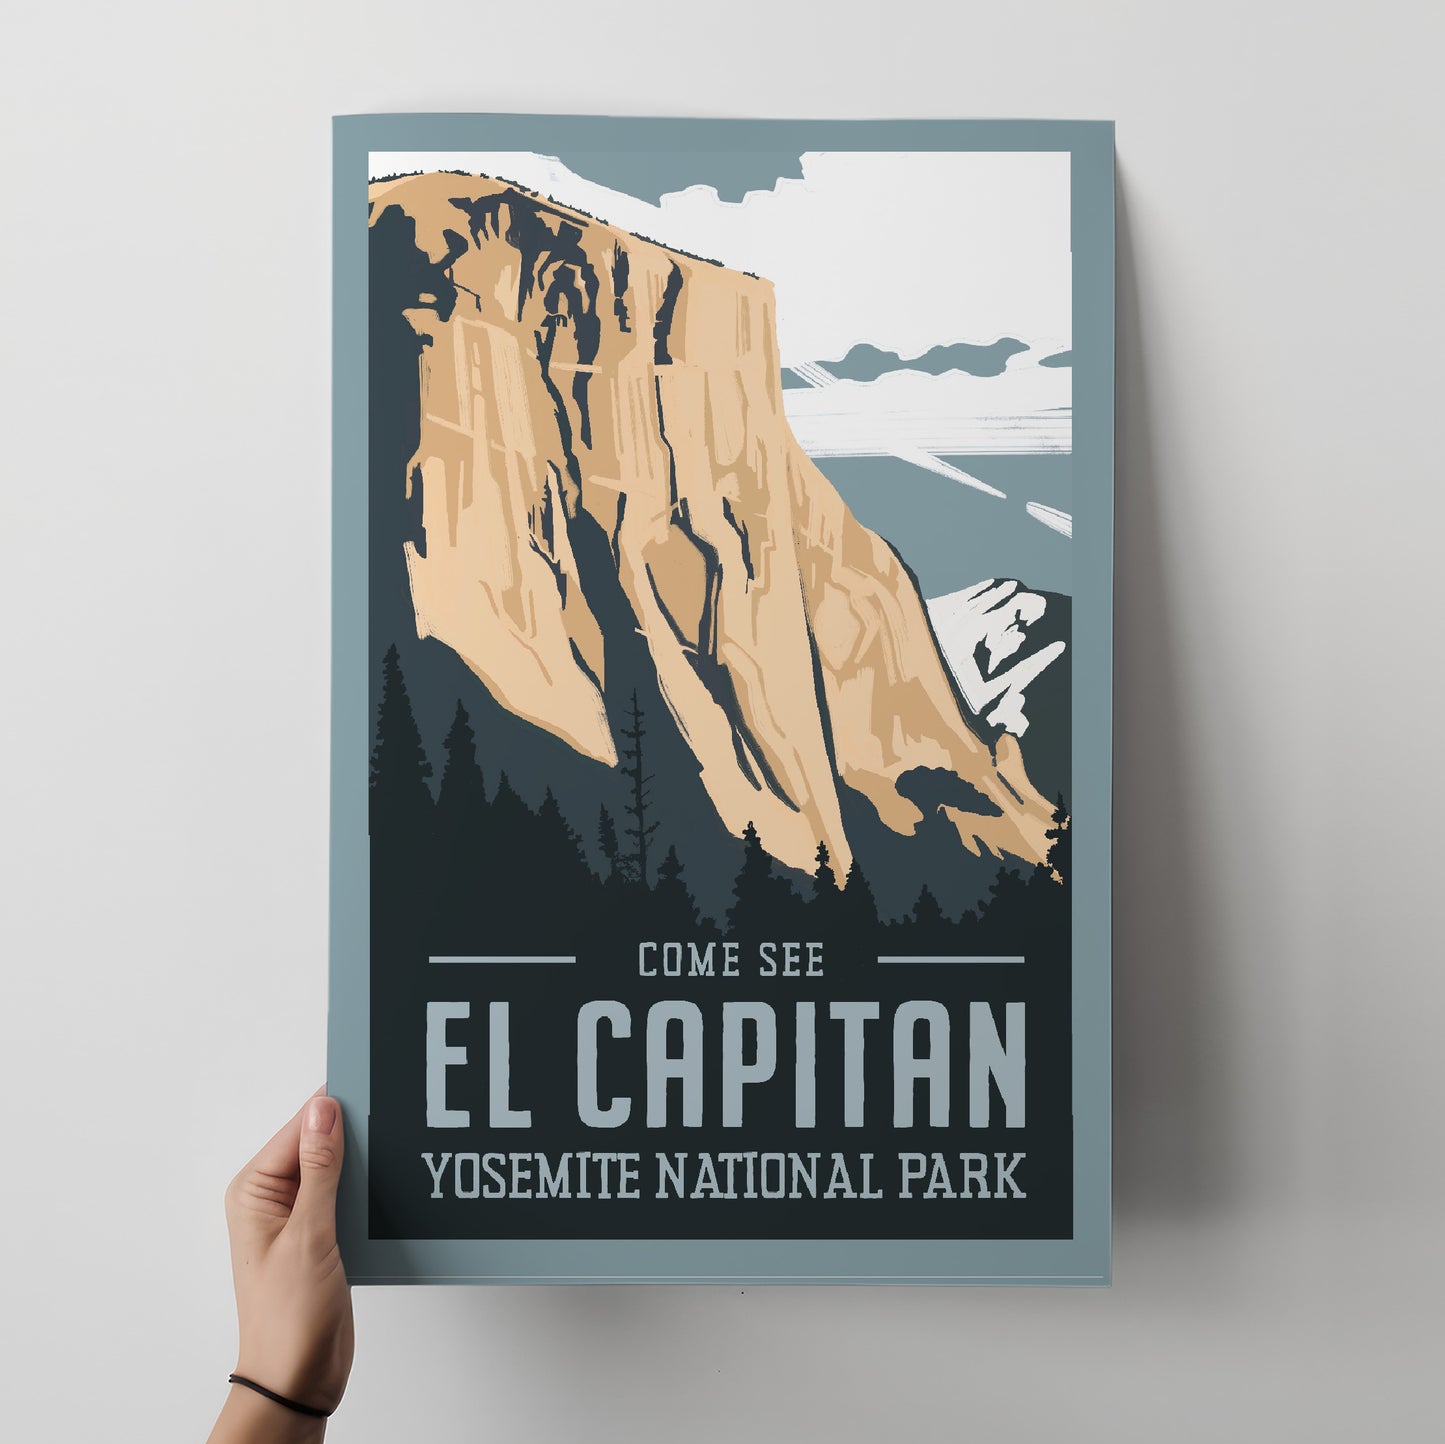 El Capitan Travel Poster